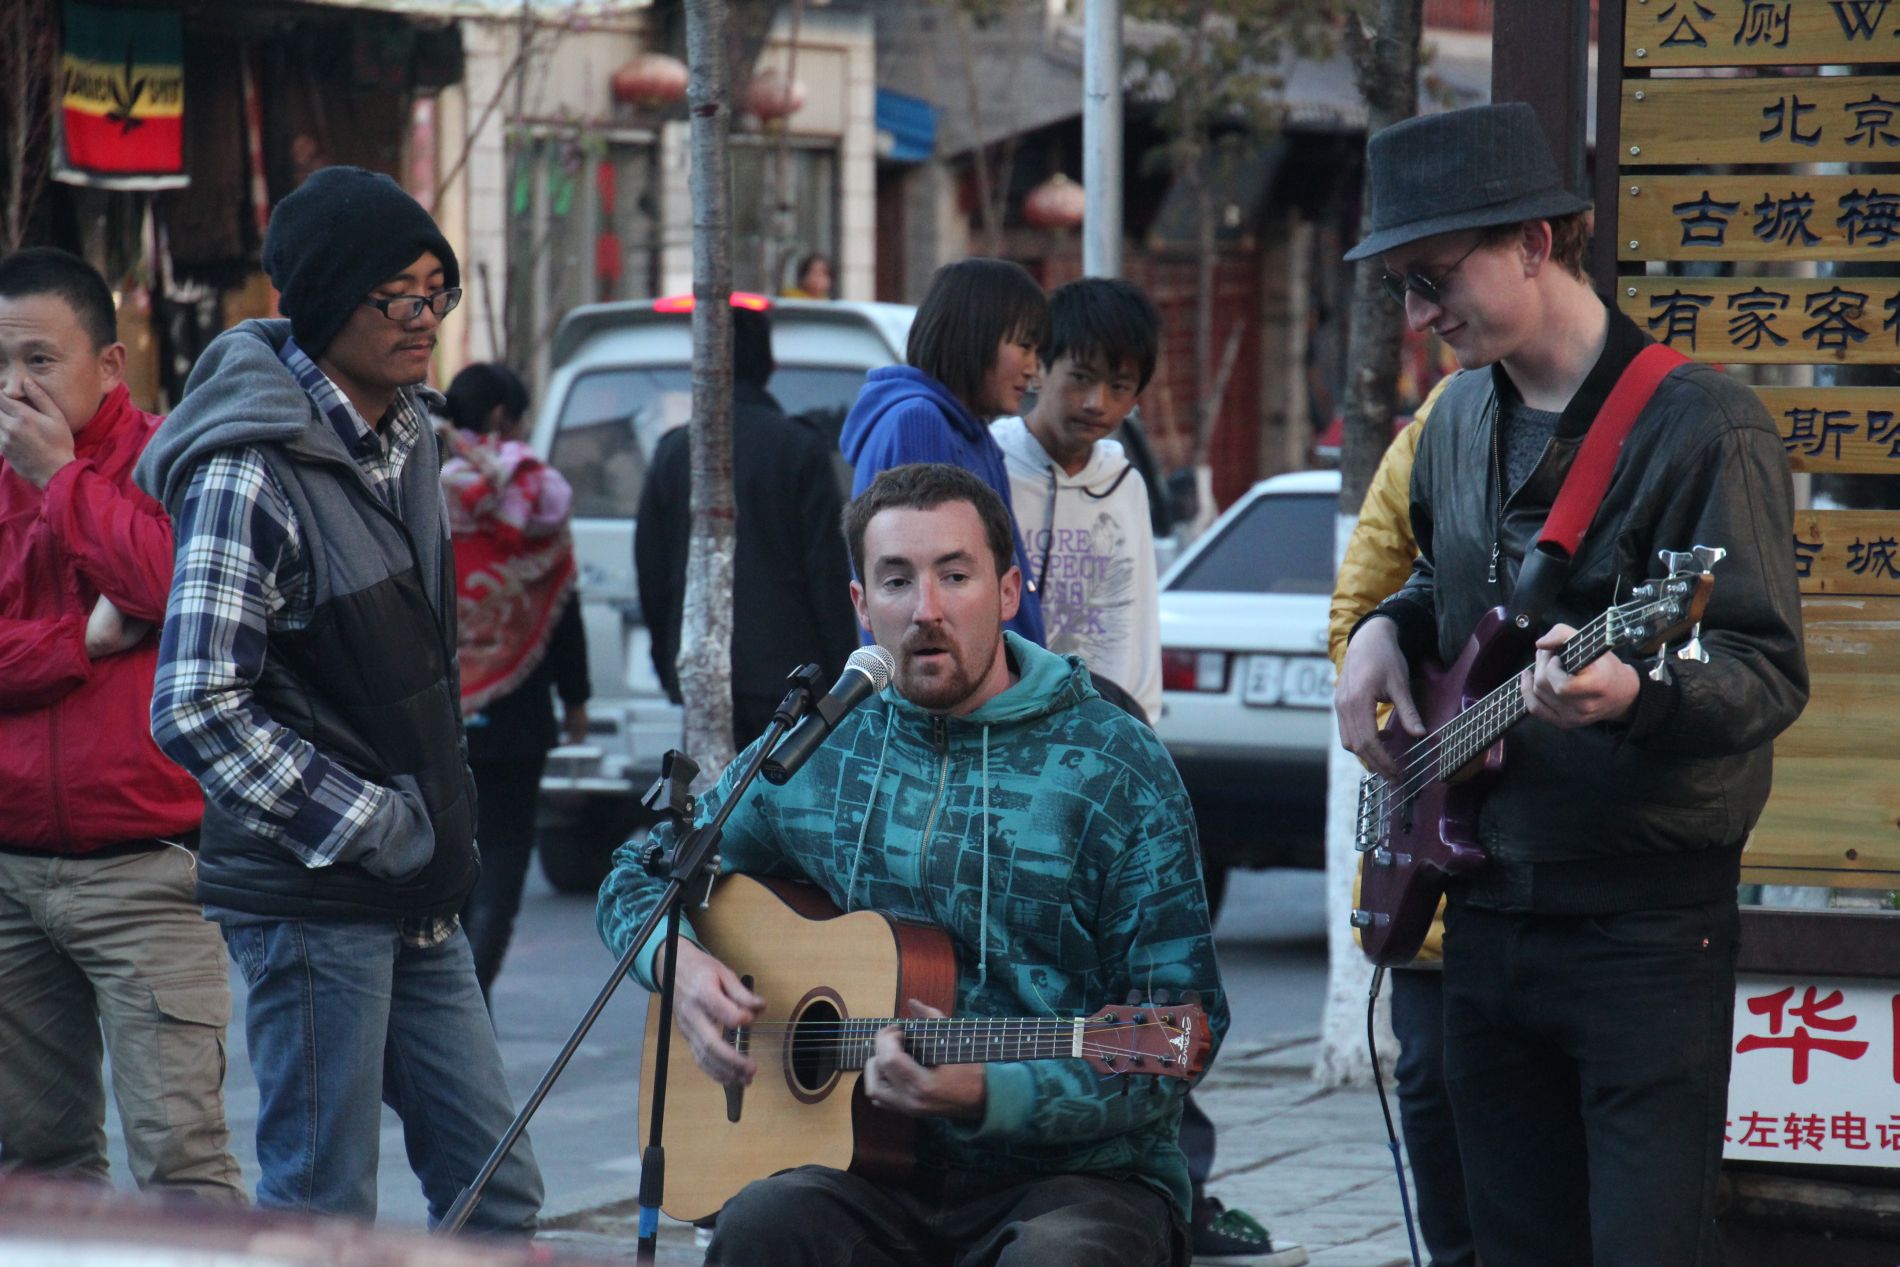 Street musicians play guitars in DàlÇ??, China.